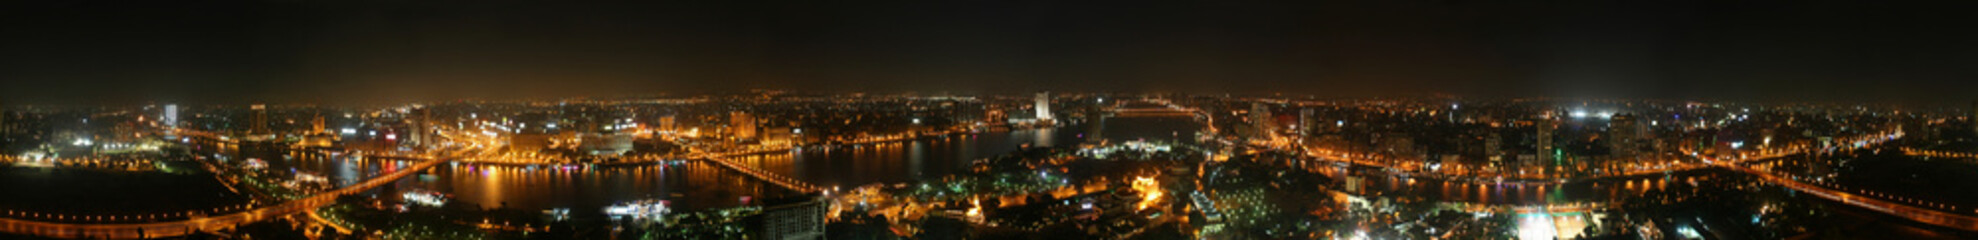 Cairo at night - 360 - 67902030